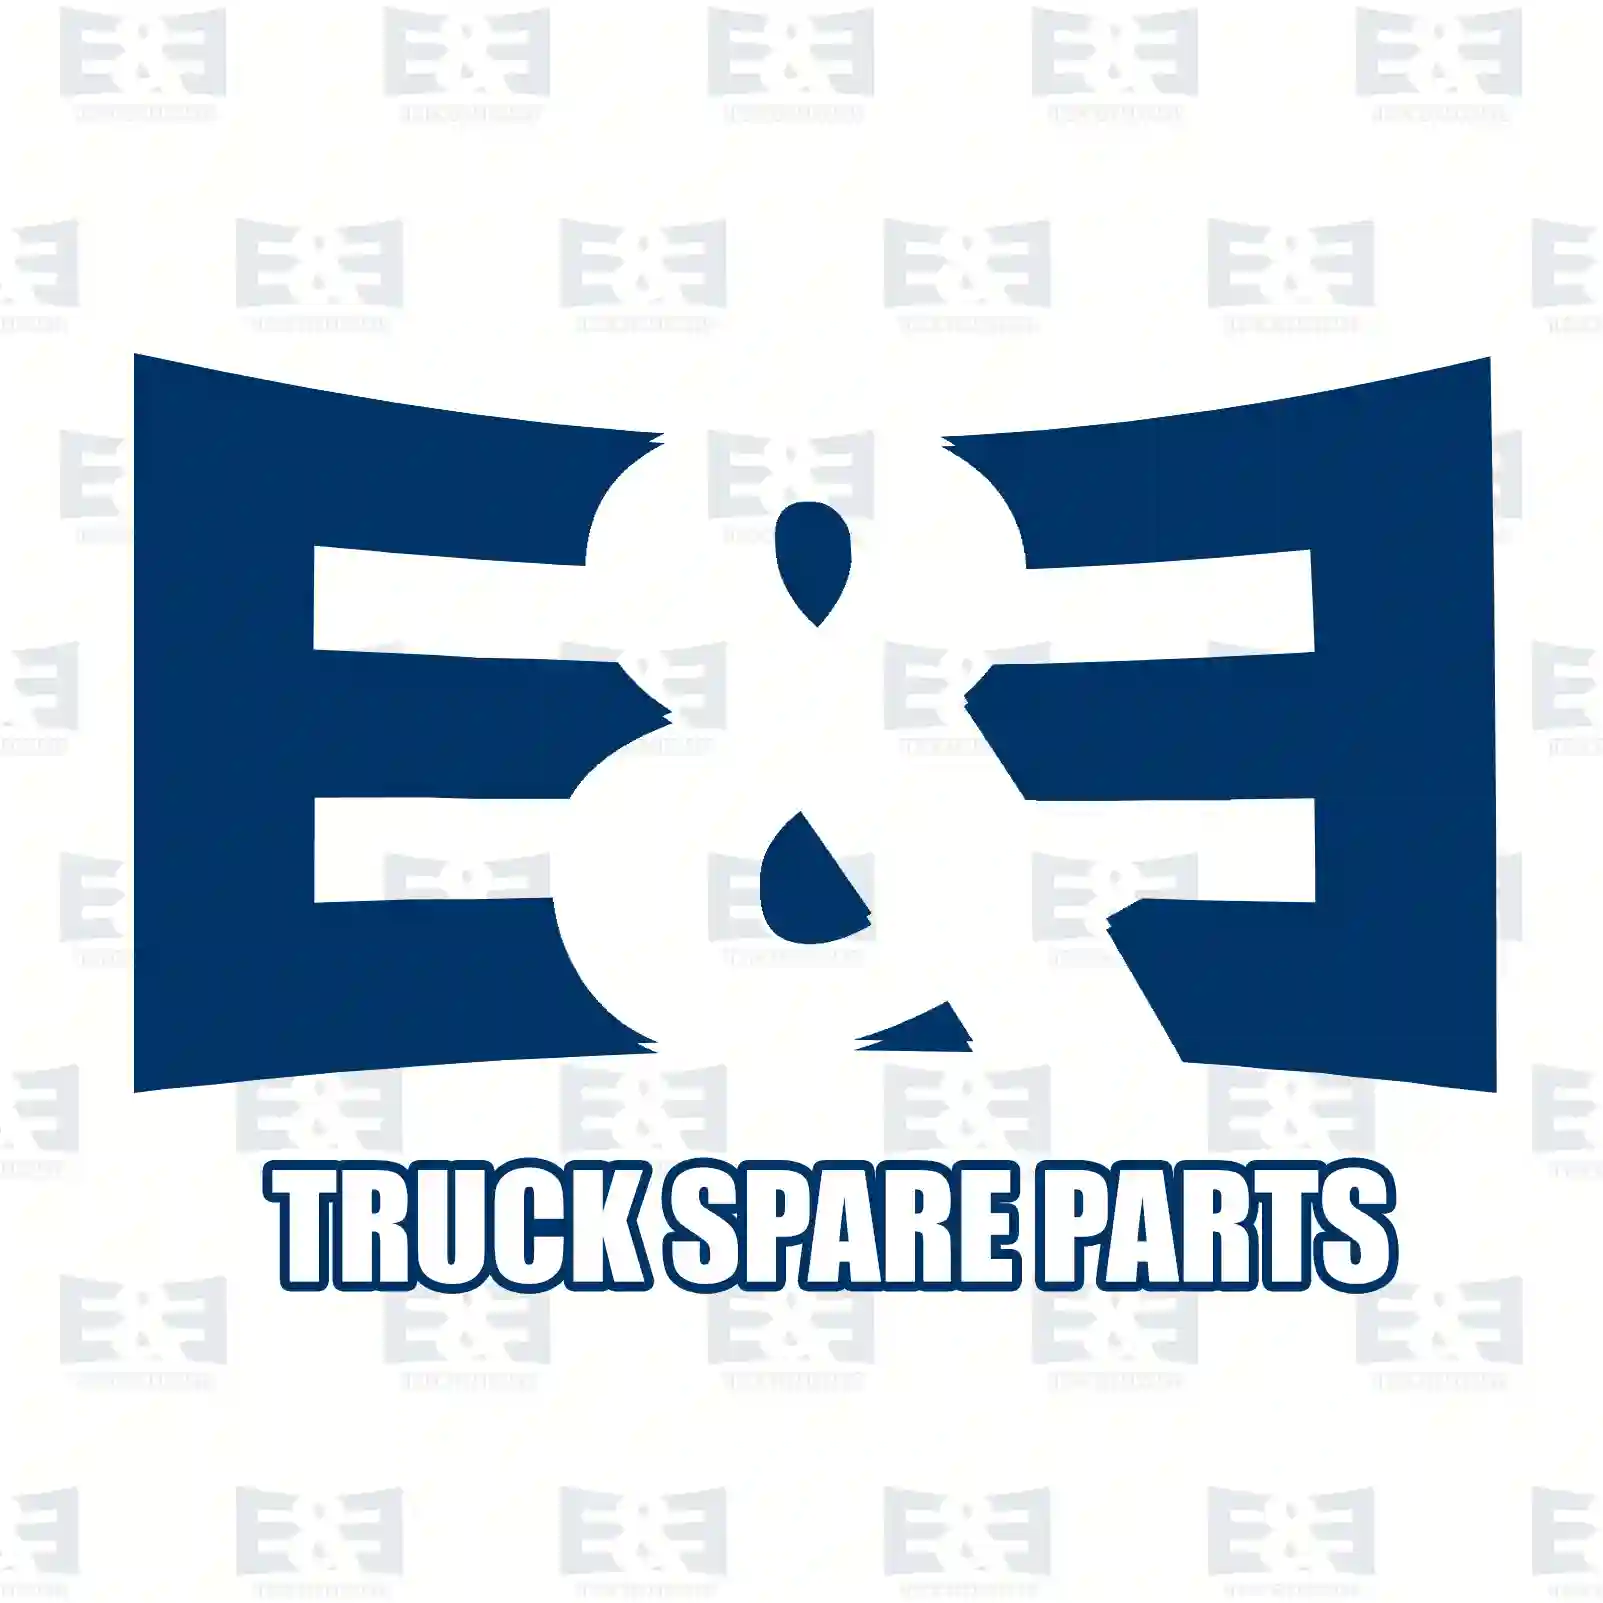 Ignition coil, 2E2298492, 504142675, 504142 ||  2E2298492 E&E Truck Spare Parts | Truck Spare Parts, Auotomotive Spare Parts Ignition coil, 2E2298492, 504142675, 504142 ||  2E2298492 E&E Truck Spare Parts | Truck Spare Parts, Auotomotive Spare Parts